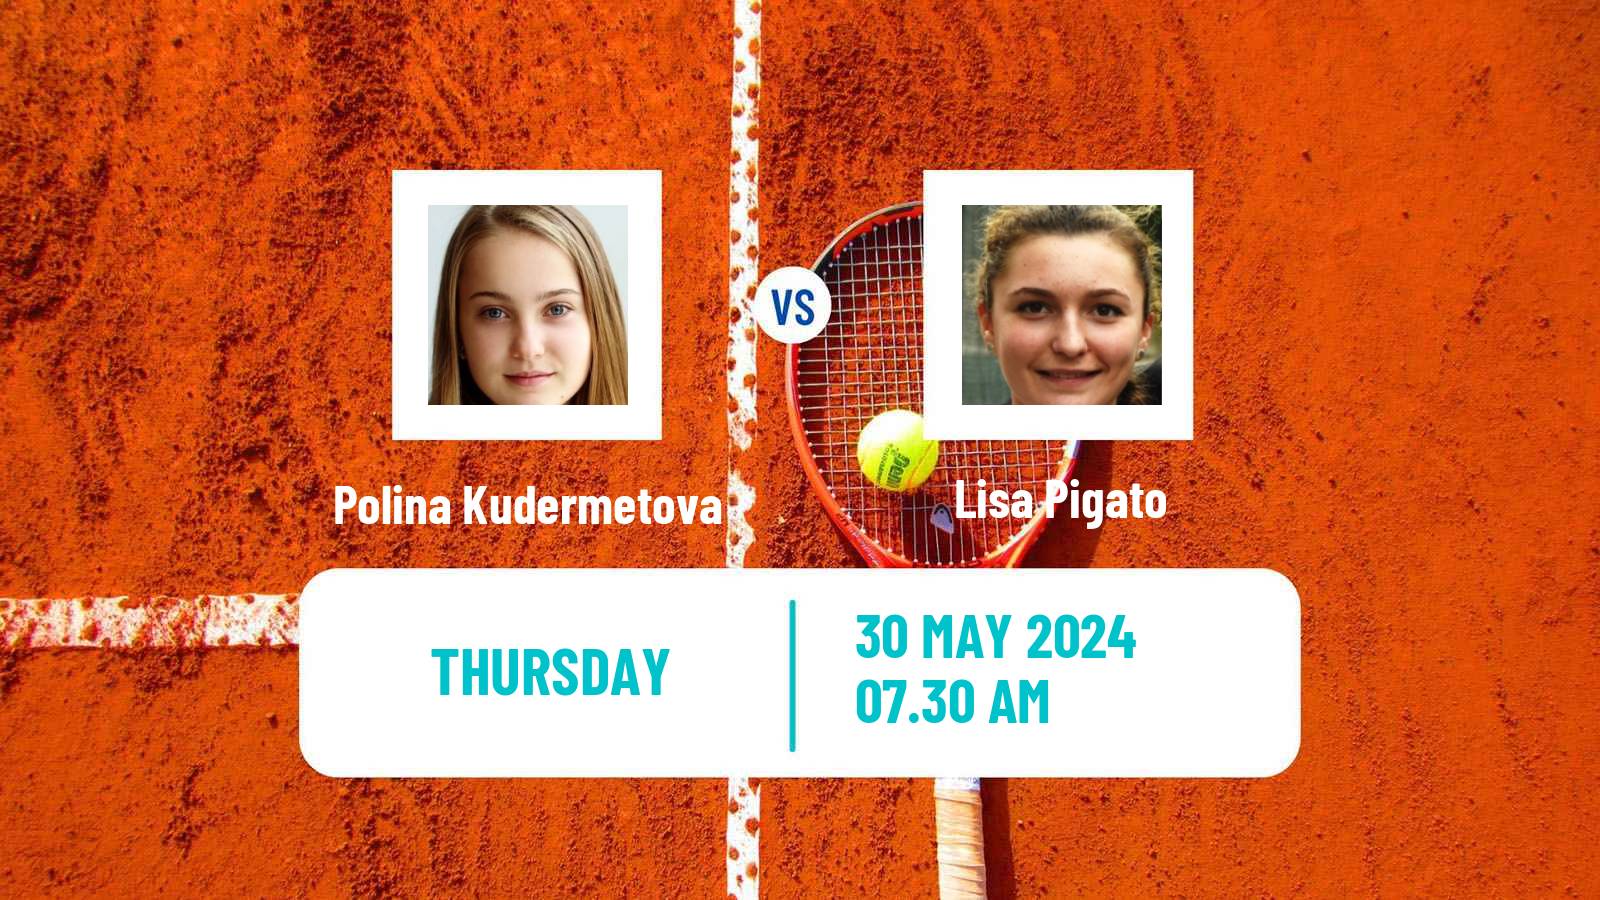 Tennis ITF W75 Brescia Women Polina Kudermetova - Lisa Pigato